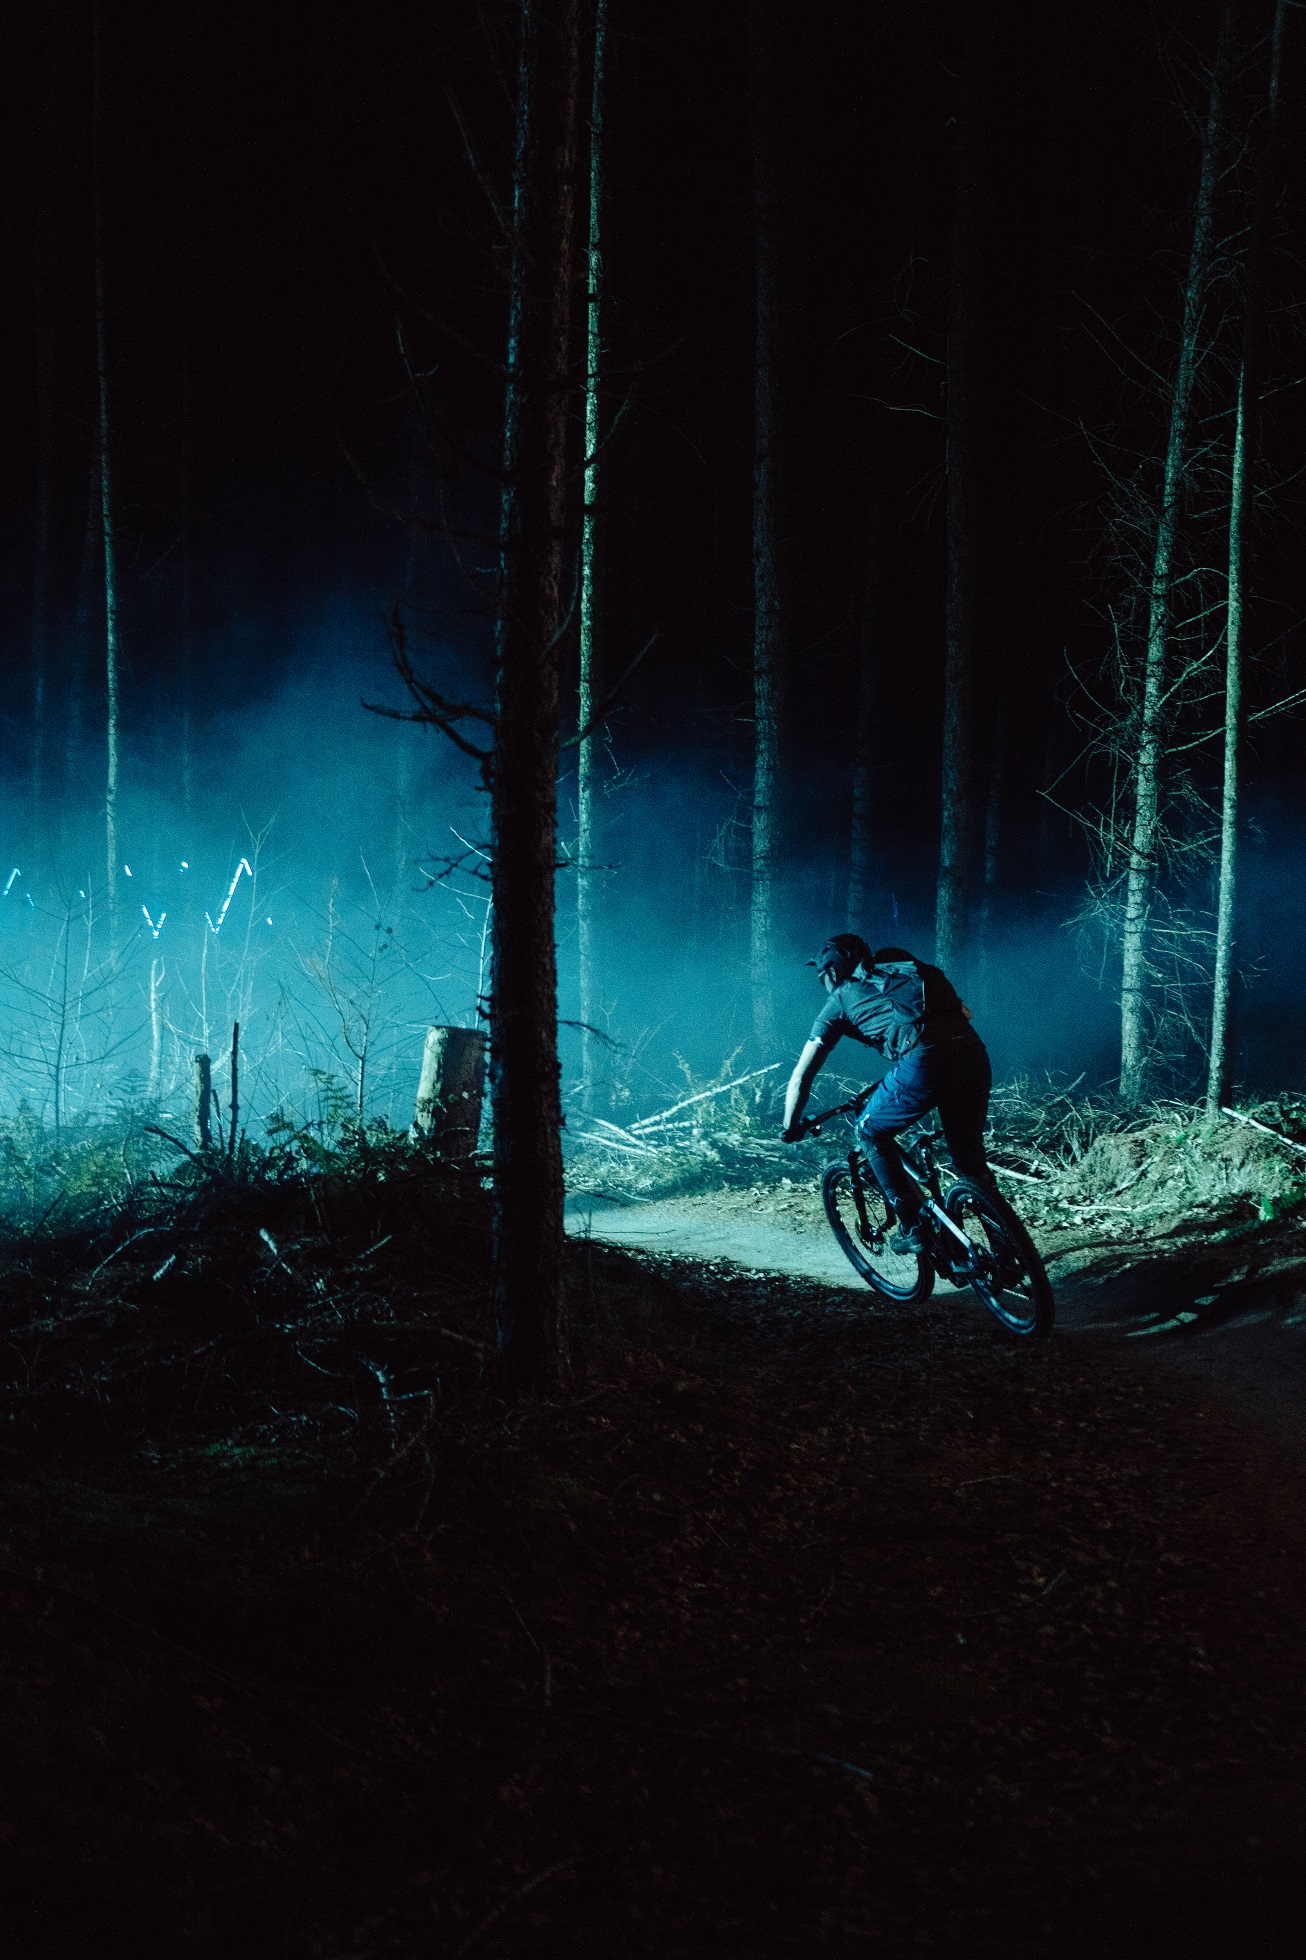 Sylwetka człowieka na rowerze górskim w ciemnym lesie z niebieskimi światłami w tle